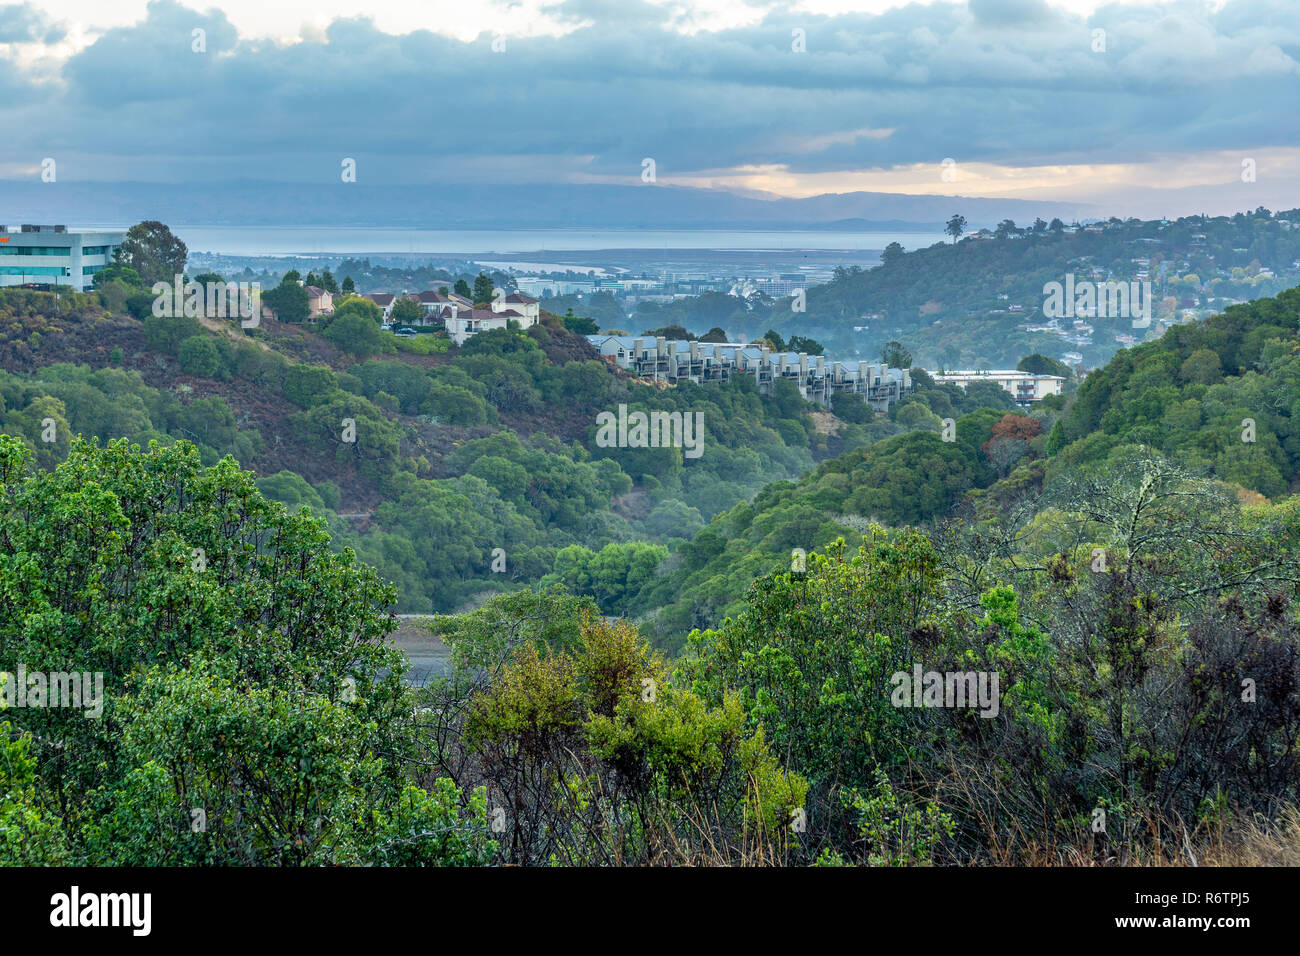 Maisons sur une colline boisée dans une banlieue, Belmont, Californie Banque D'Images